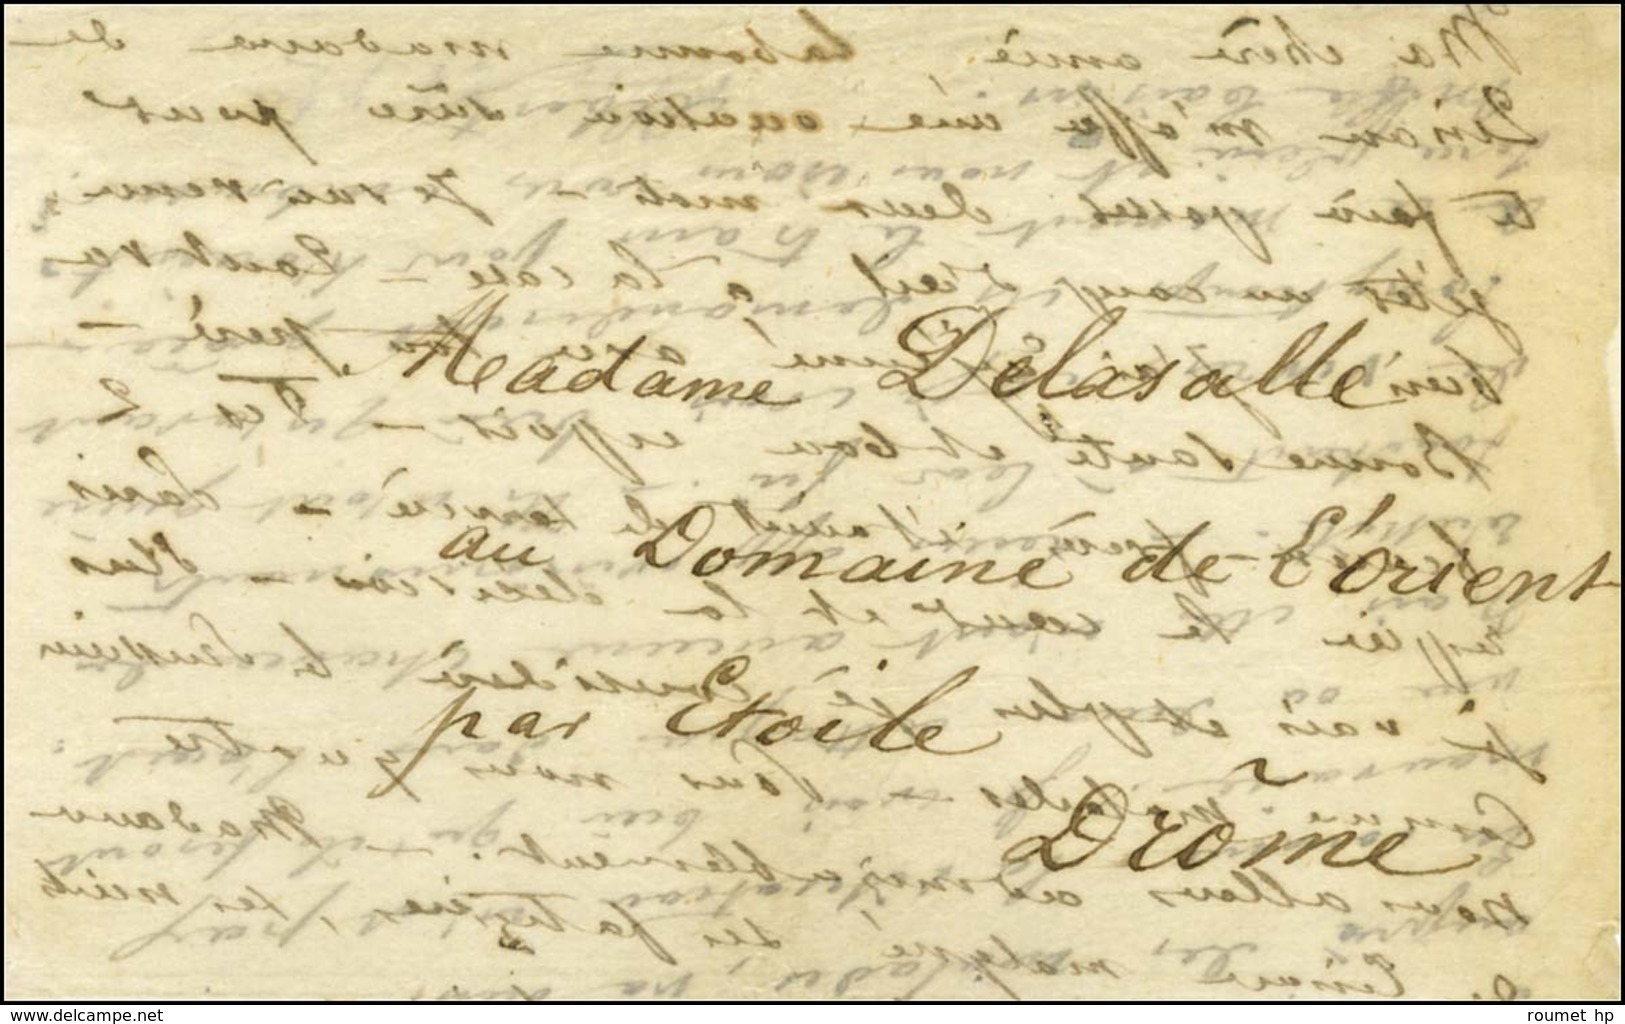 Lettre Papier Pelure Avec Texte Daté De Paris Le 28 Septembre 1870 '' Madame De Linan M'offre Une Occasion Sûre Pour Te  - Guerre De 1870